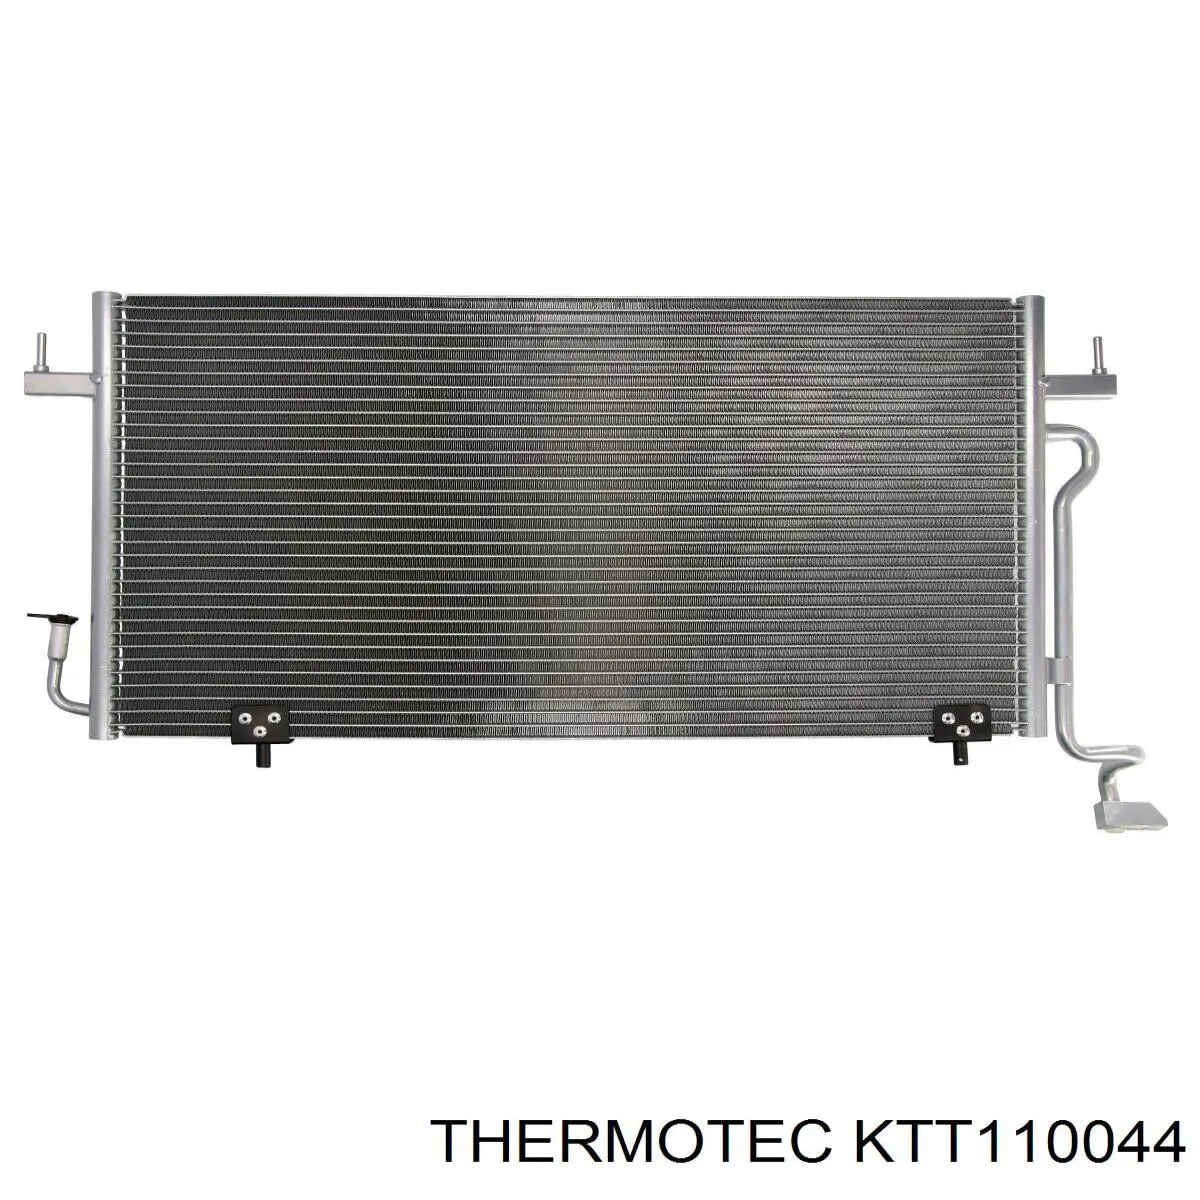 KTT110044 Thermotec condensador aire acondicionado